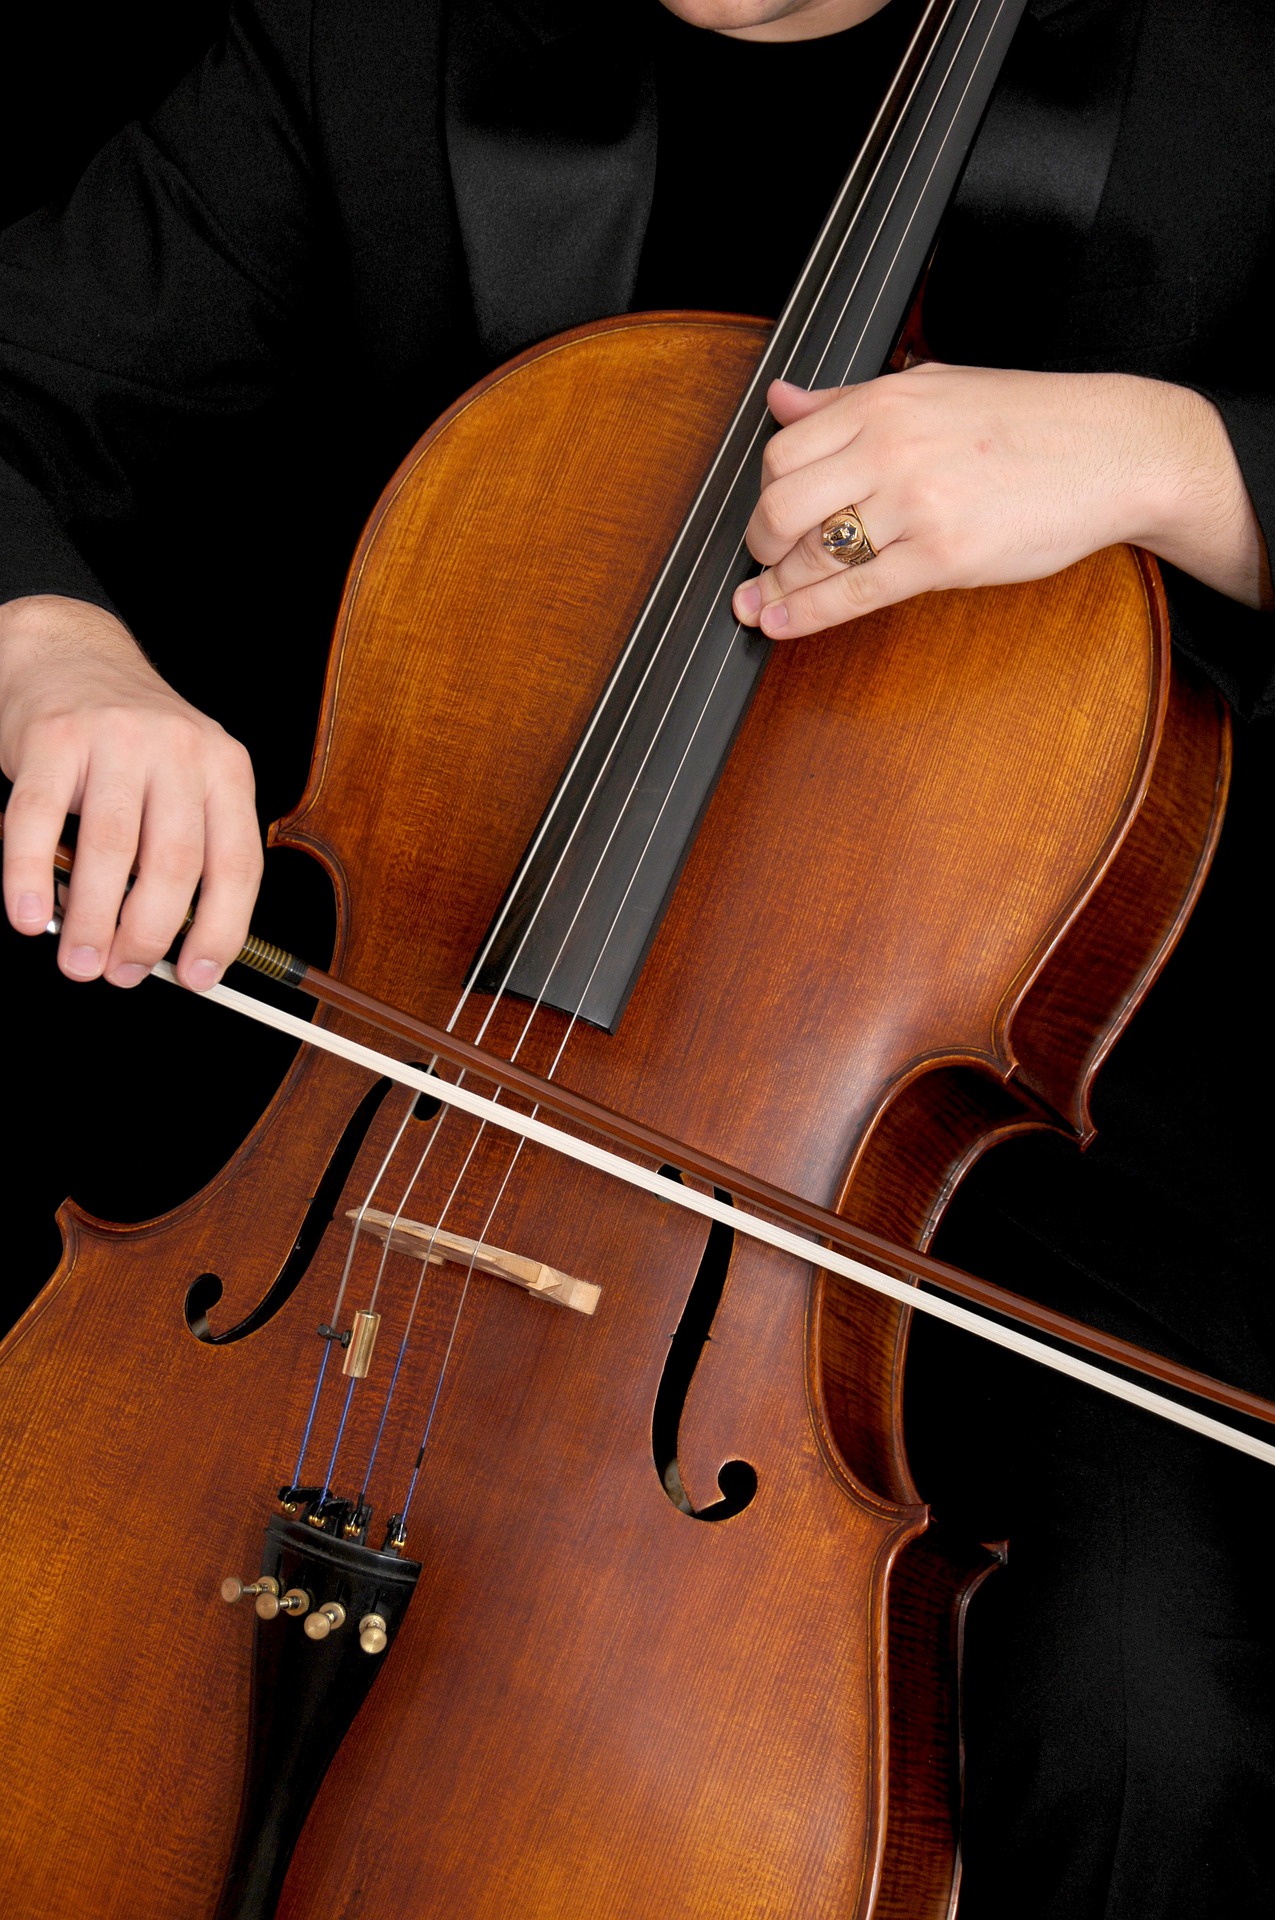 las manos sobre un violonchelo tocando.